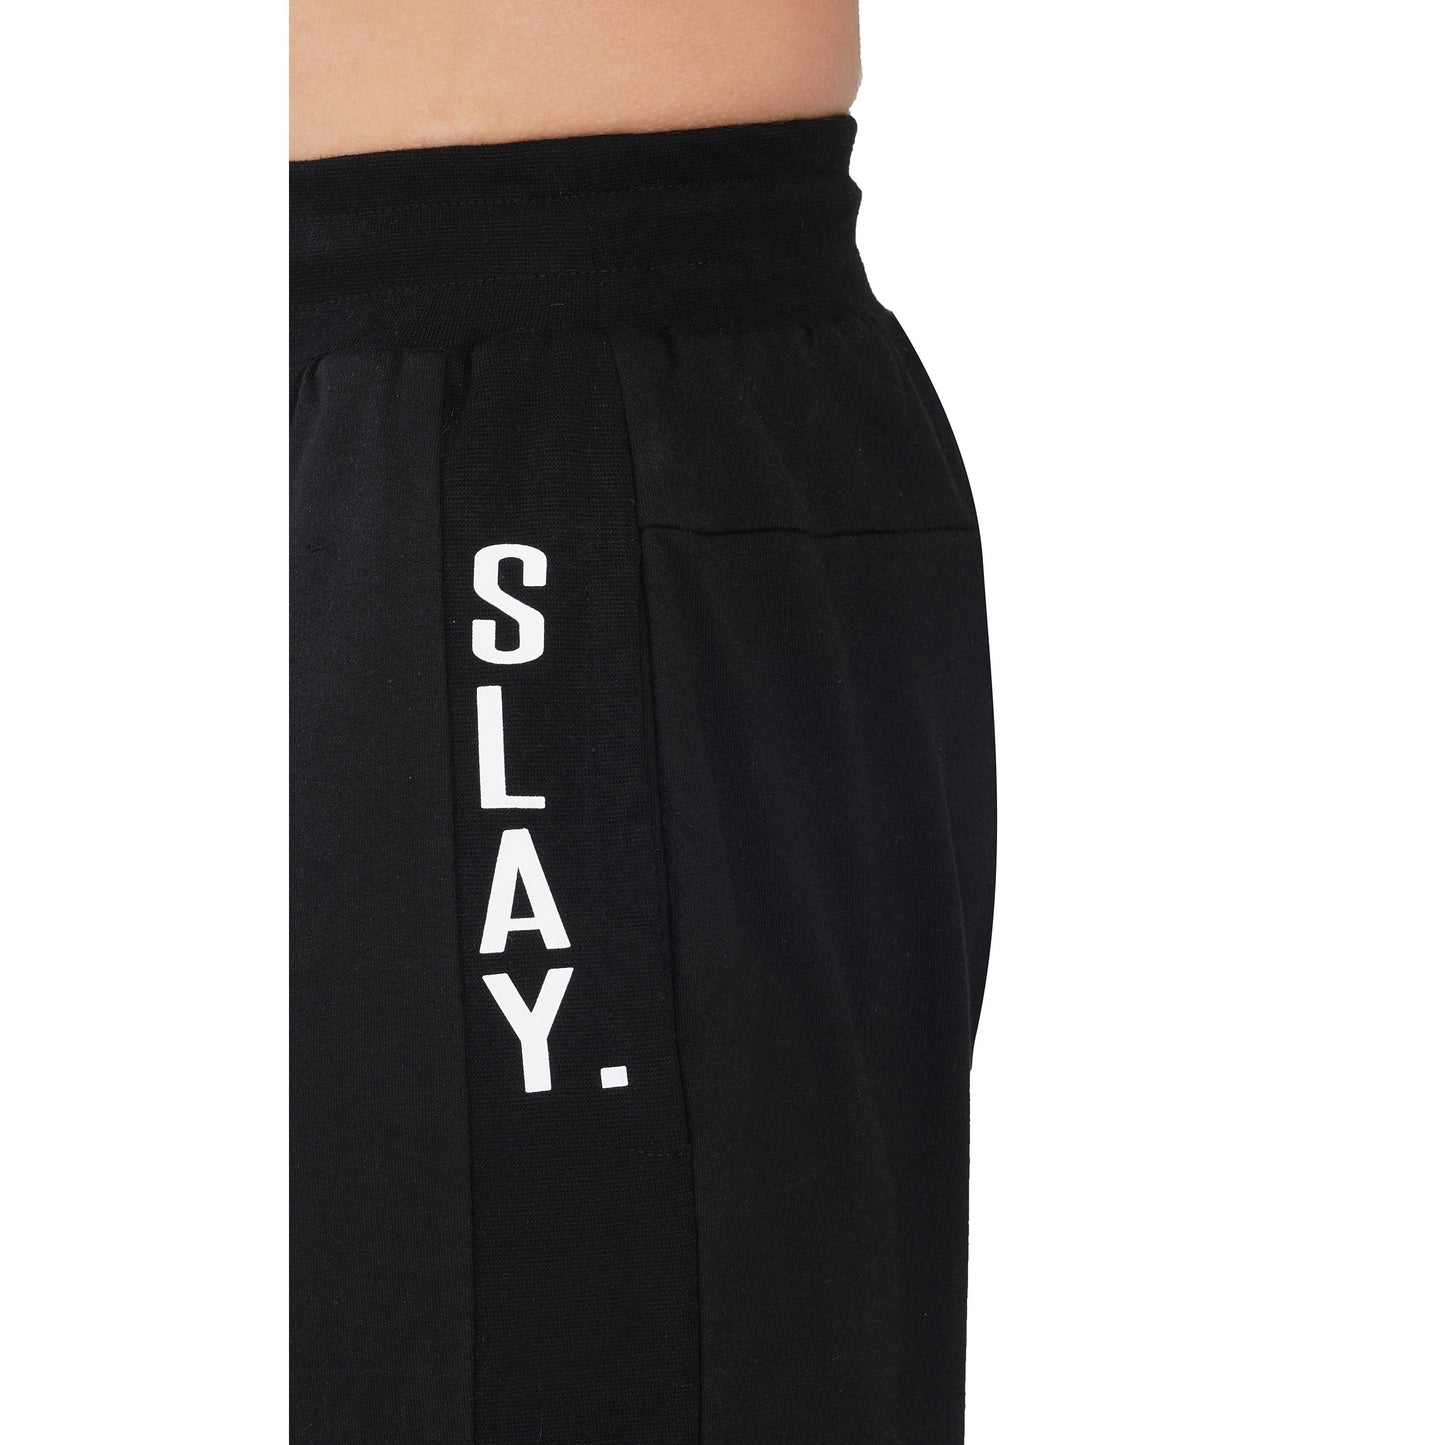 SLAY. Men's Black Joggers-clothing-to-slay.myshopify.com-Joggers